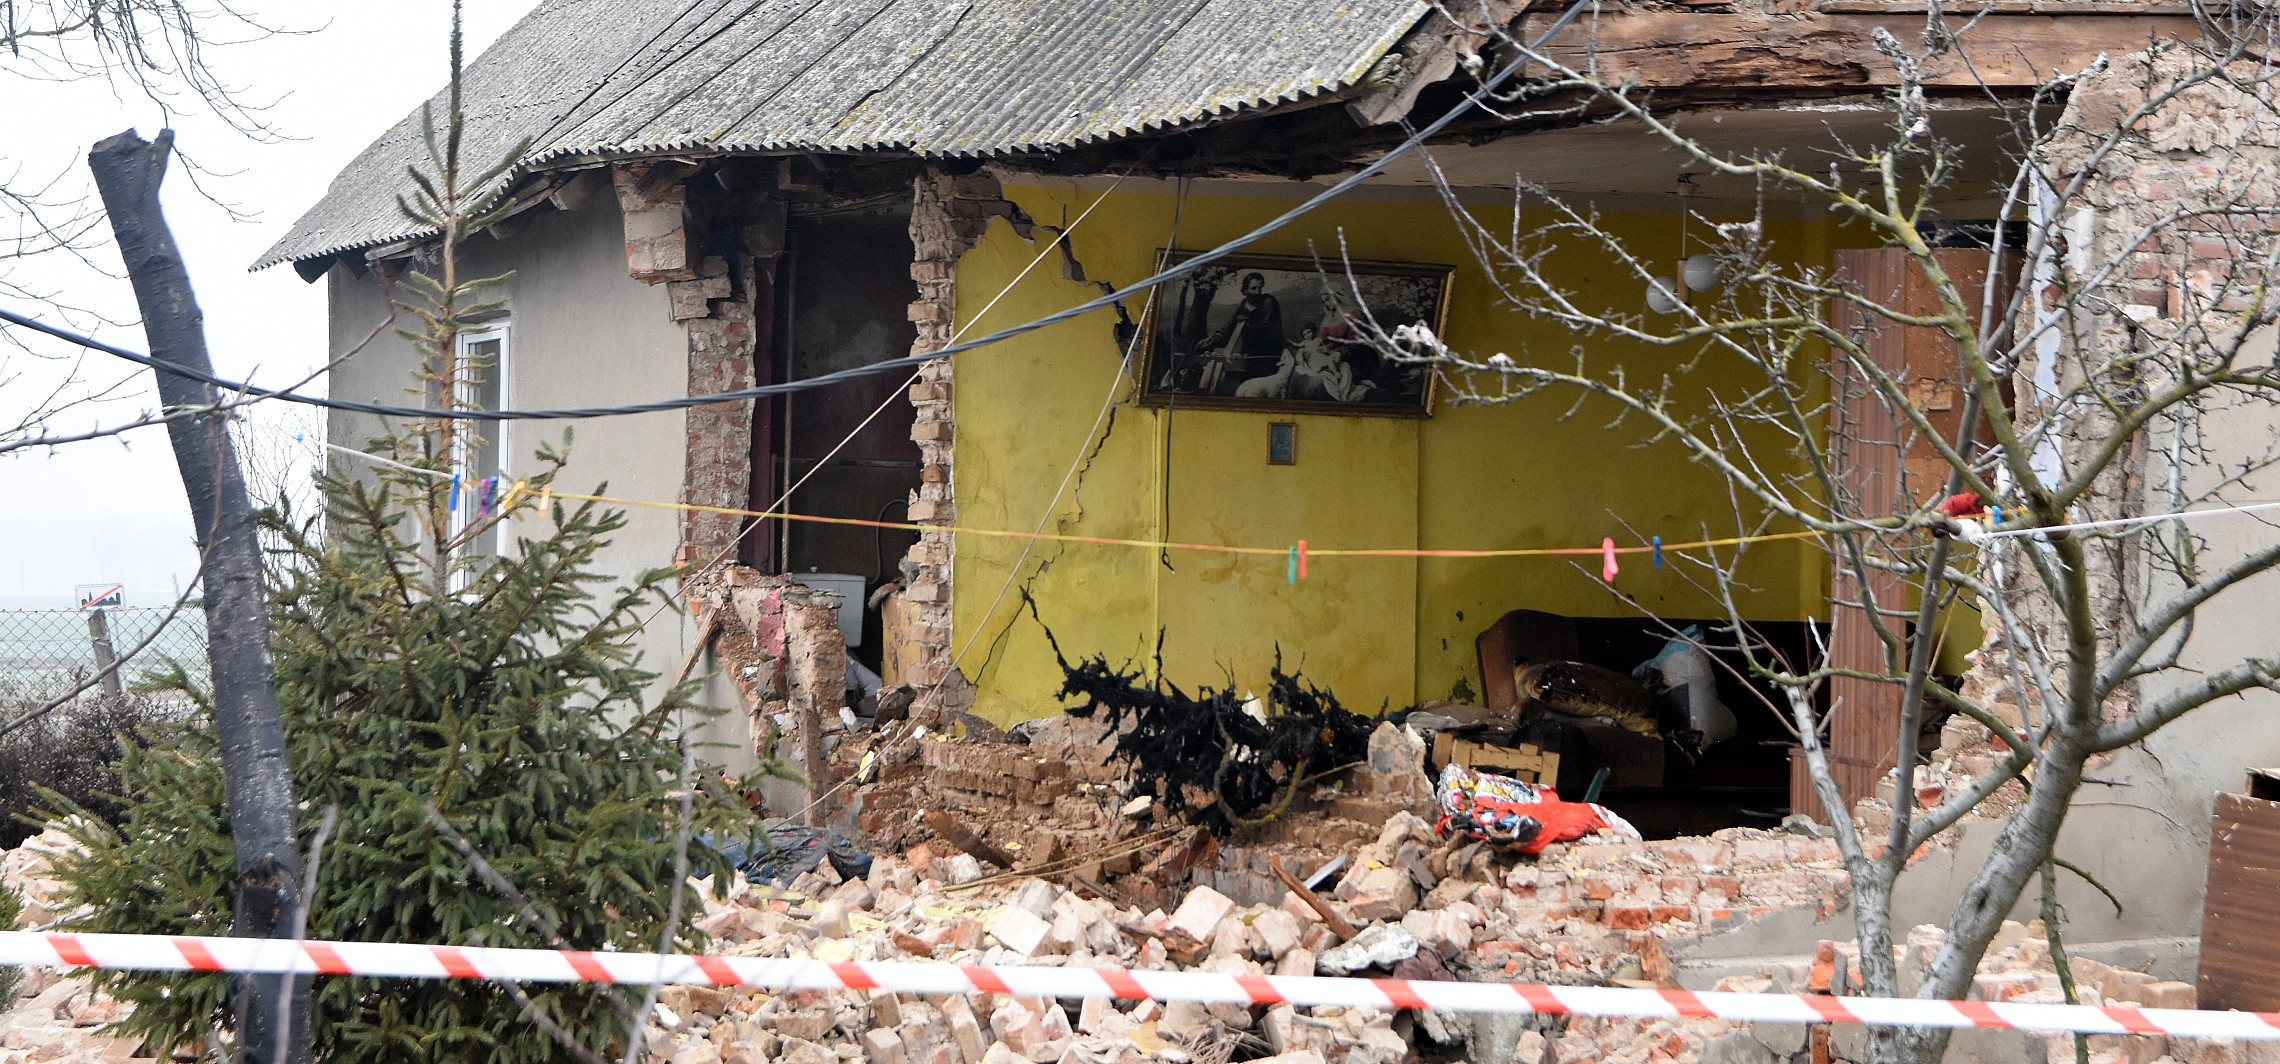 Janikowo - Wybuch gazu w domu. Jedna osoba ranna